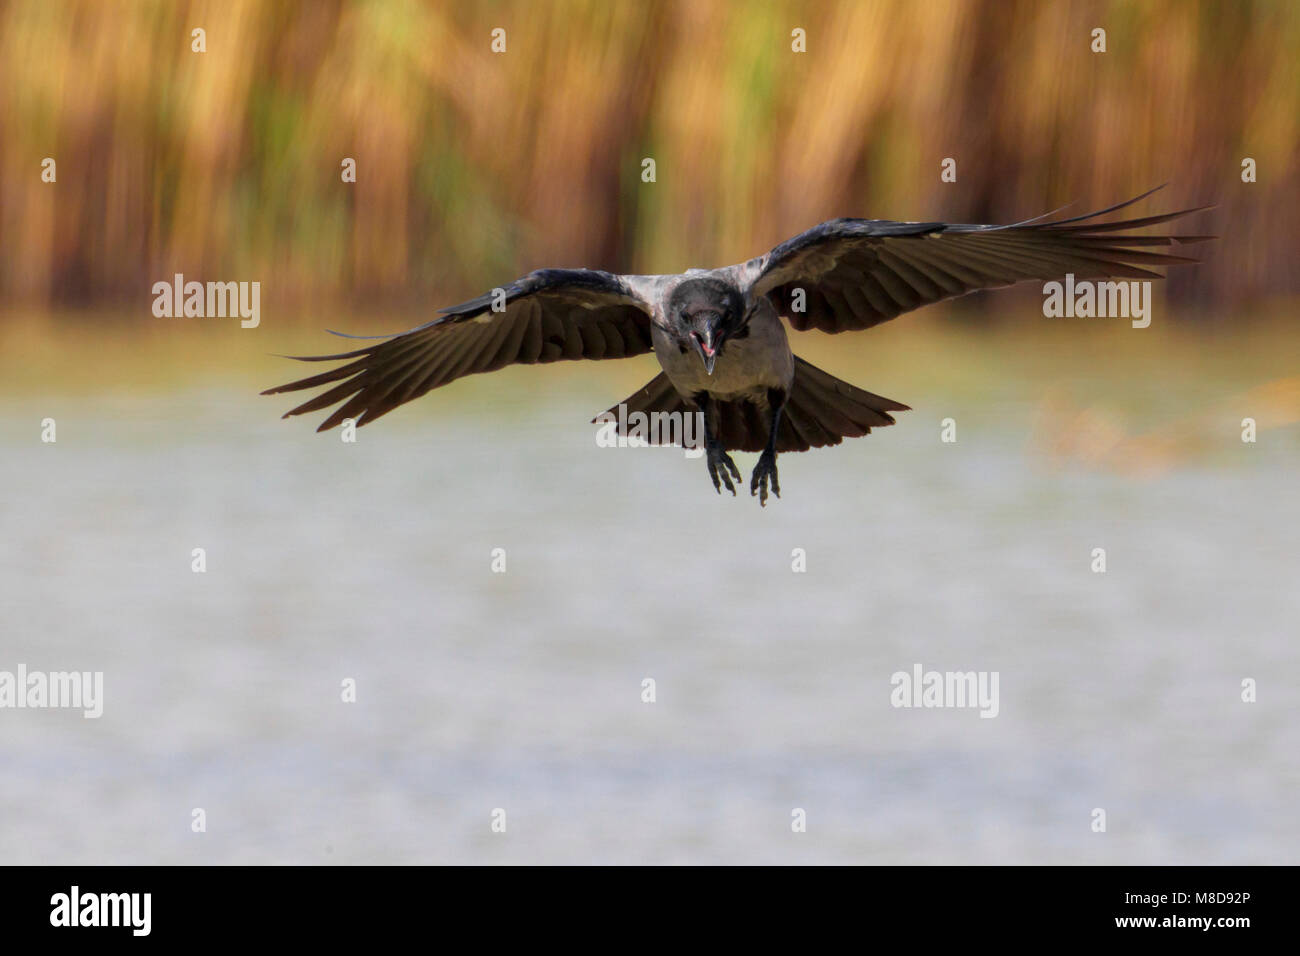 Vliegende Bonte Kraai; Flying Hooded Crow Stock Photo